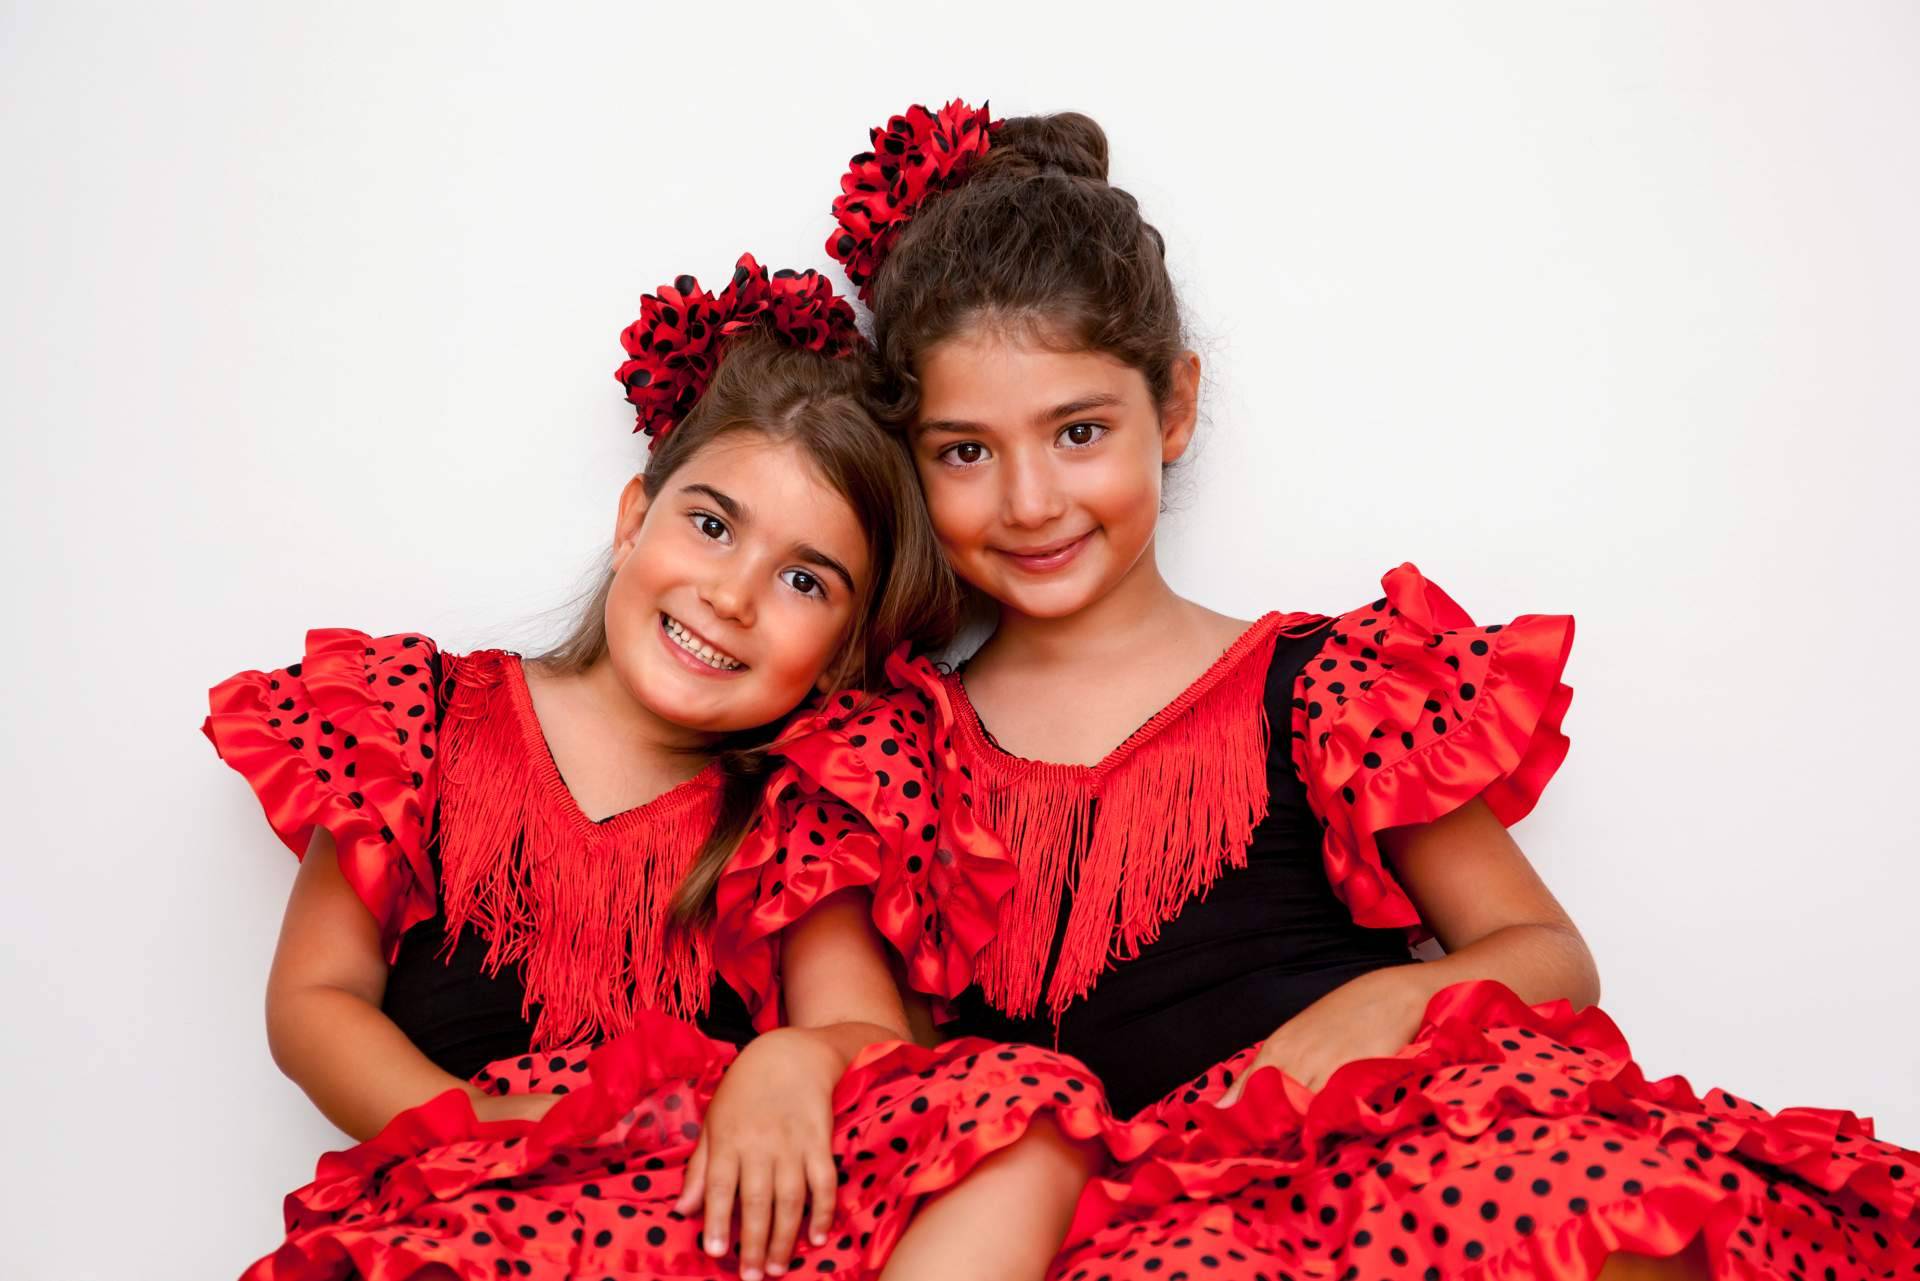 Feria de Abril de Sevilla 2023: tendencias en trajes de flamenca - Foto 1